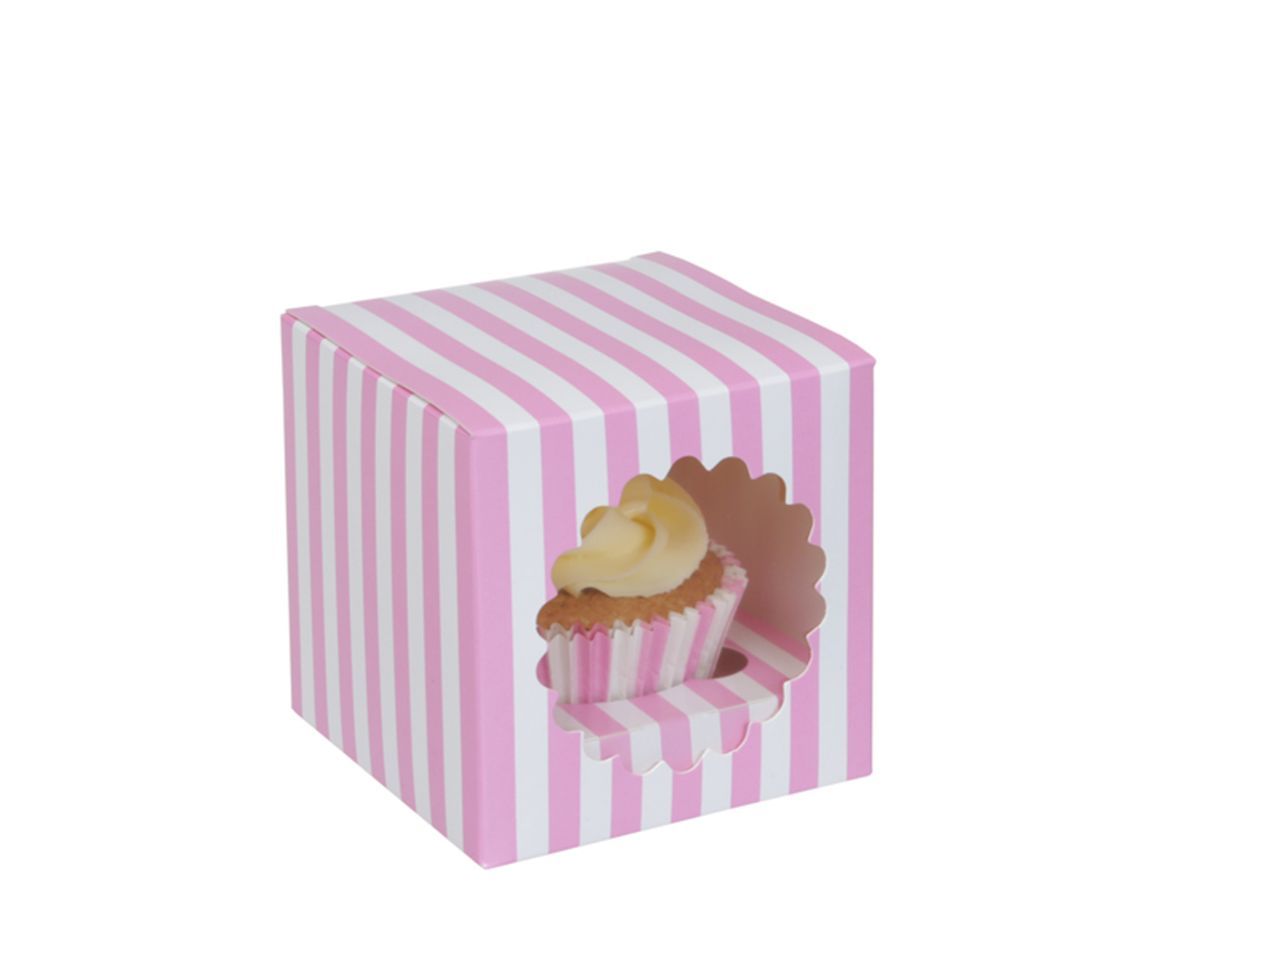 Cupcake Box für 1 Cupcake rosa weiß gestreift 3 Stück von House of Marie